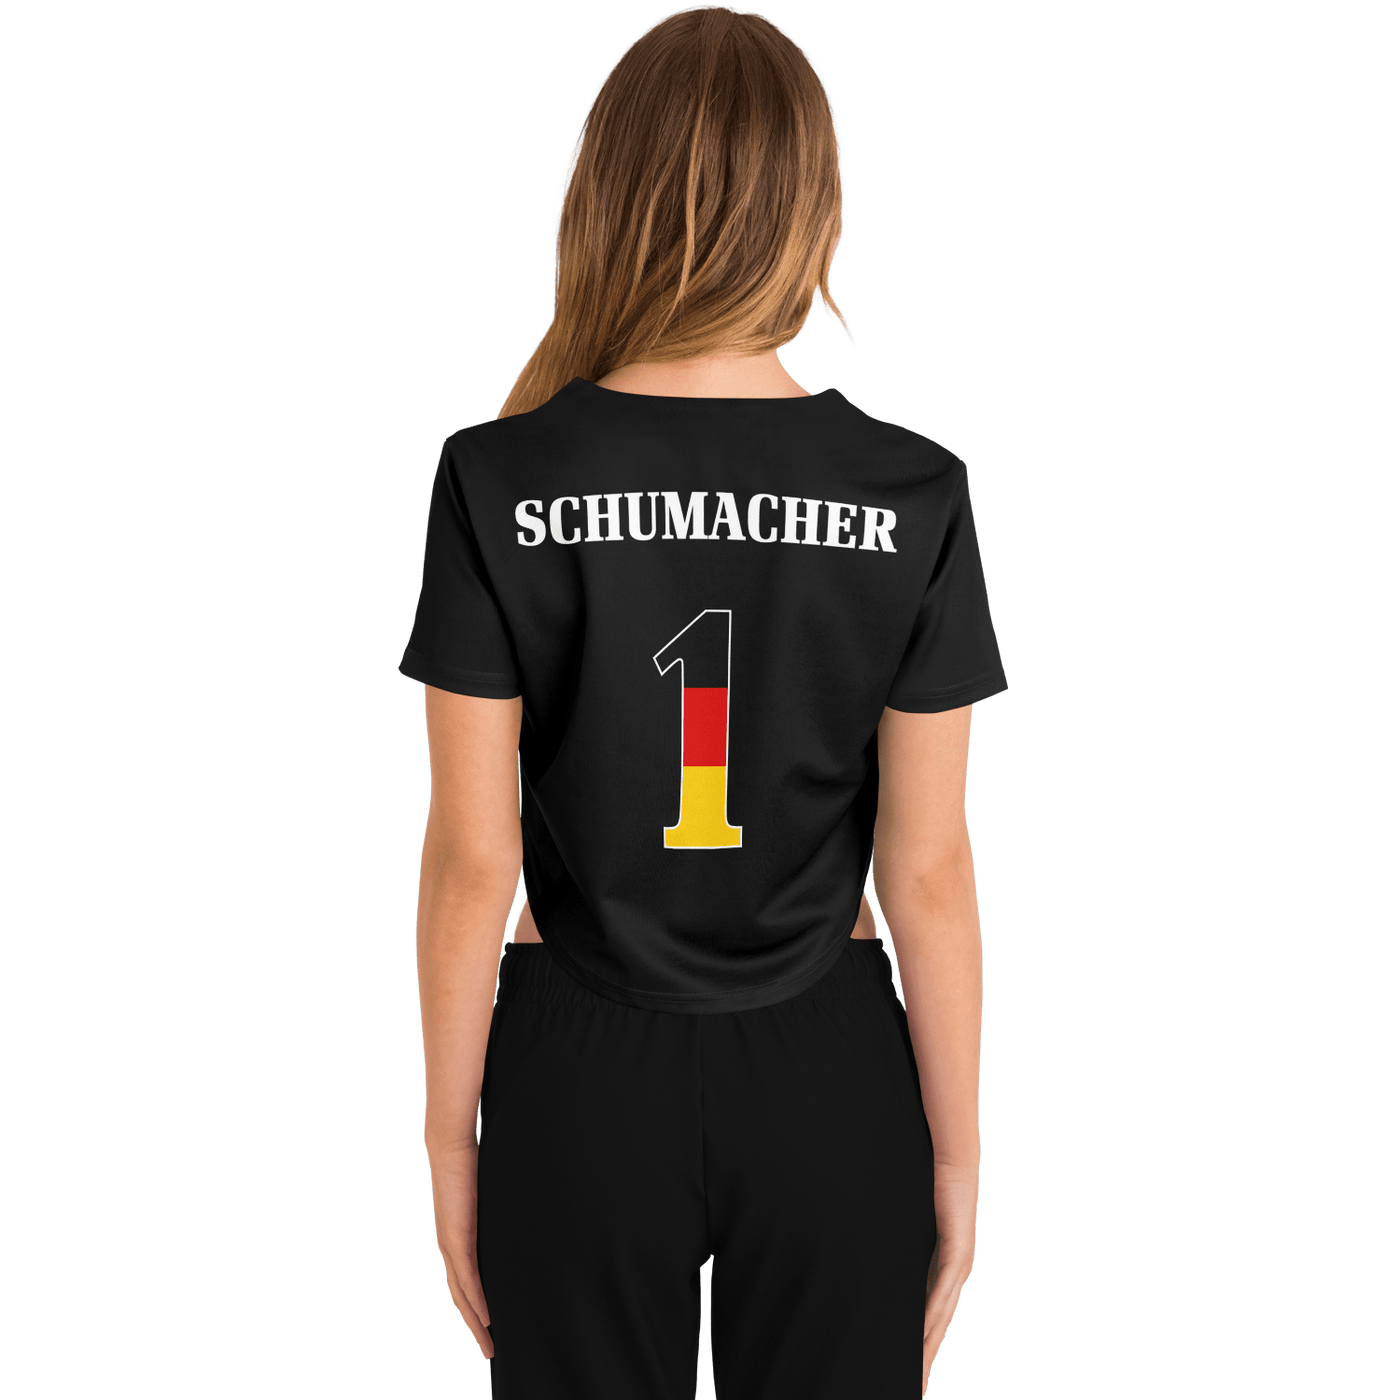 Schumacher - Deutscher Meister Crop Top Jersey (Clearance) - Furious Motorsport